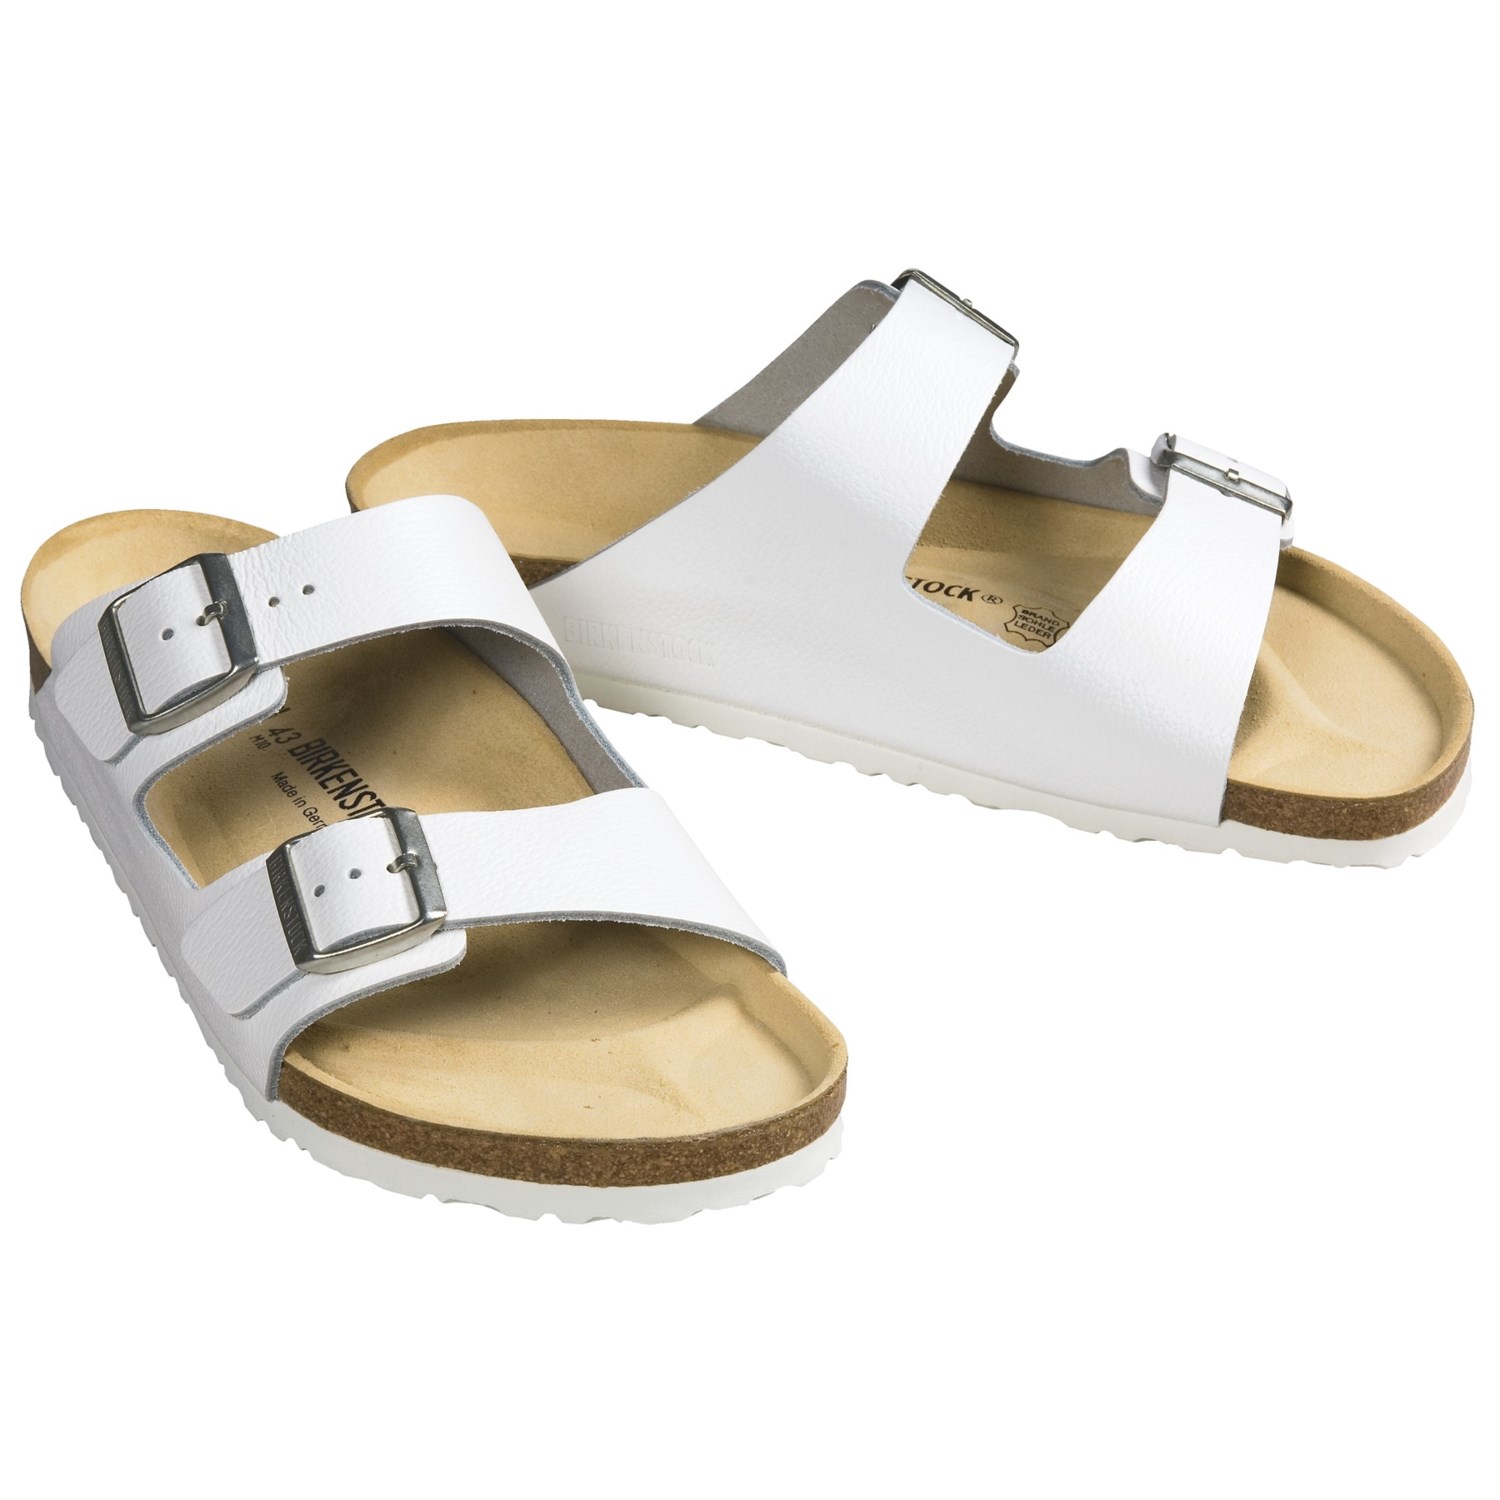 Birkenstock Arizona Sandals (For Men and Women) - Save 64%